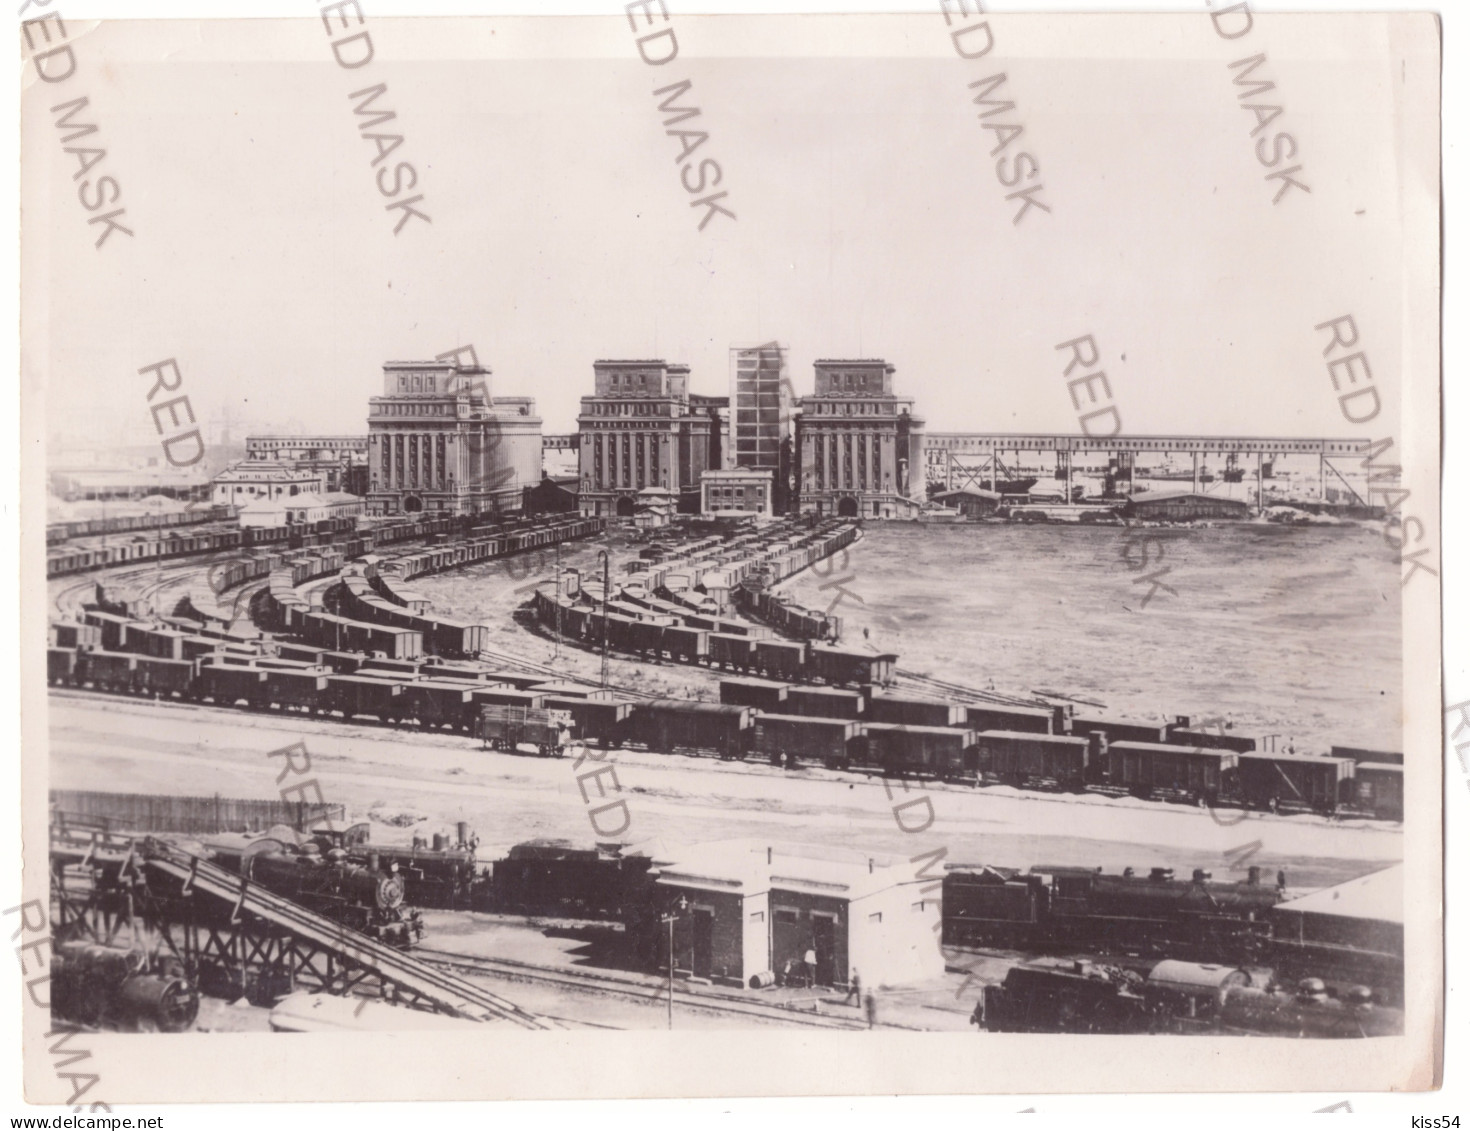 RO 06 - 19115 CONSTANTA, Silozurile, Trains ( 21/16 Cm ) - Old Press Photo - 1939 - Trenes